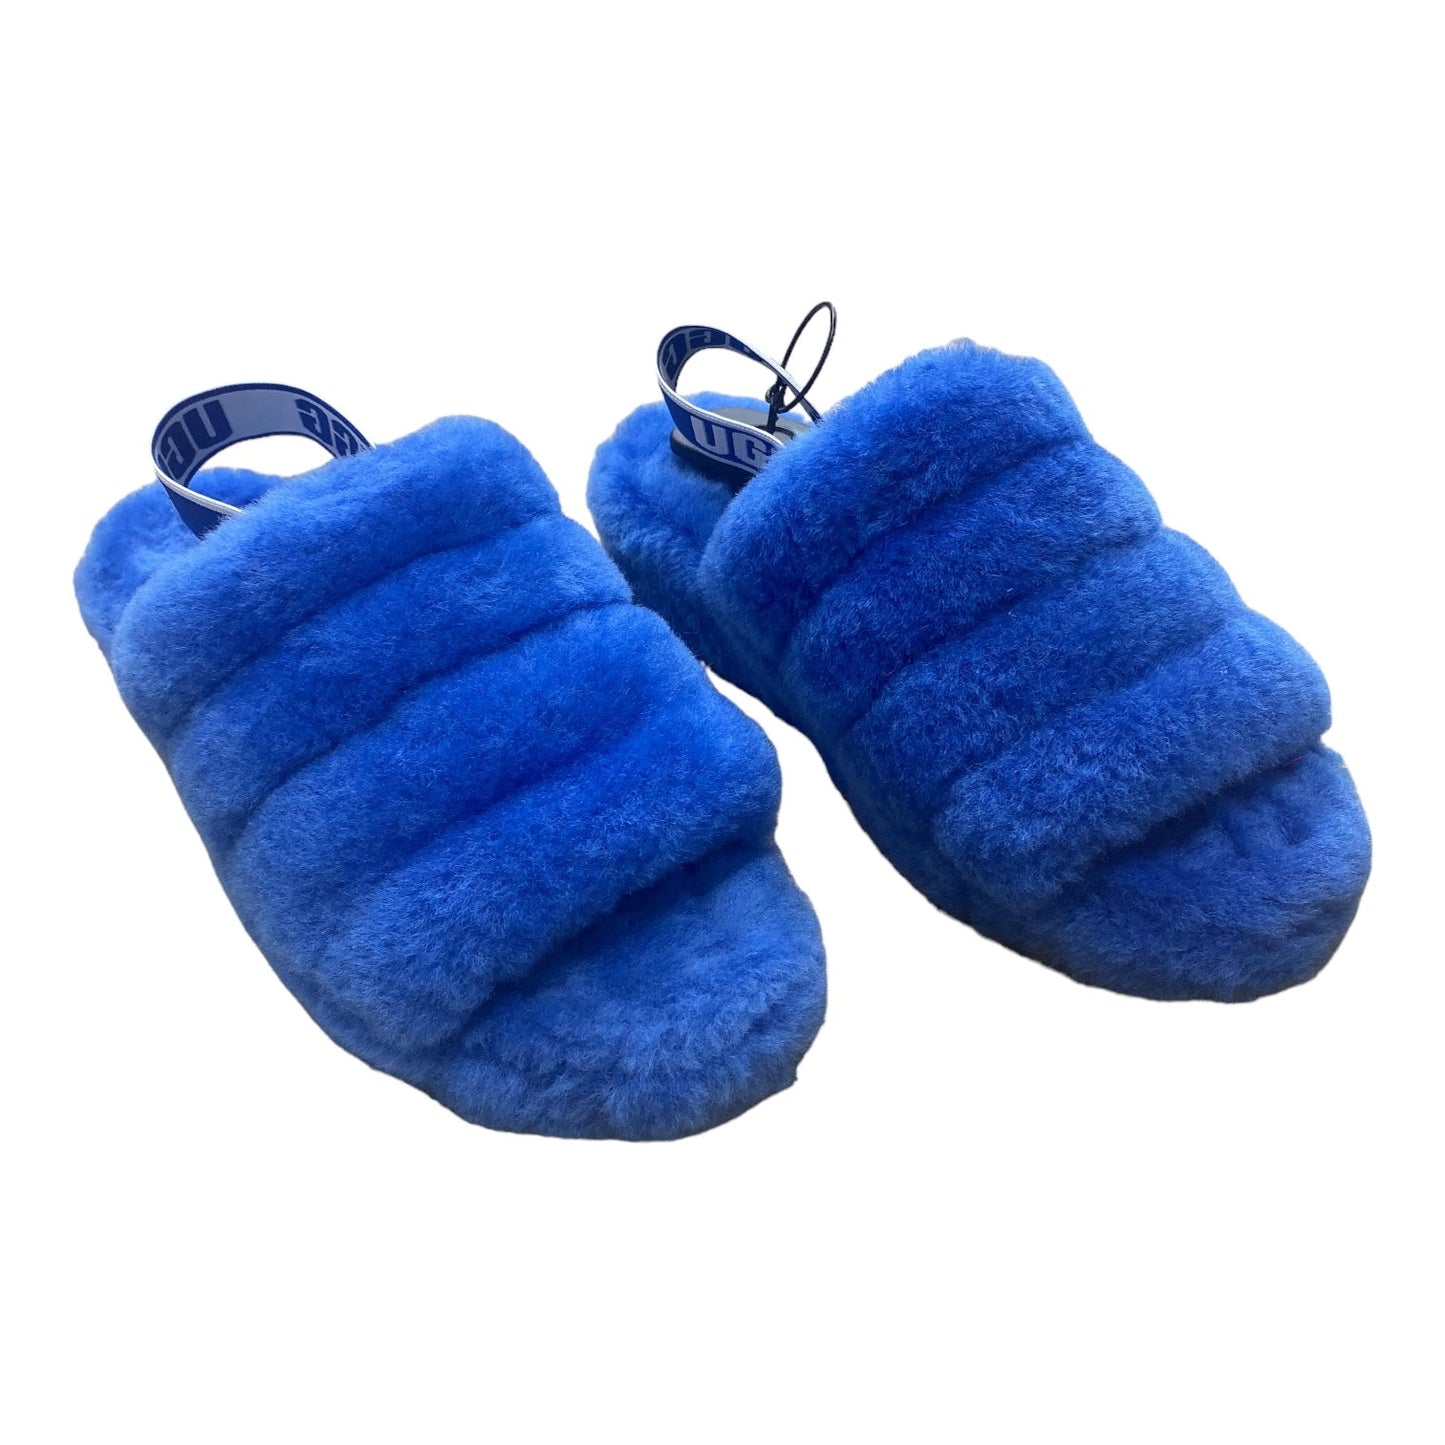 Blue Sandals Designer Ugg, Size 8